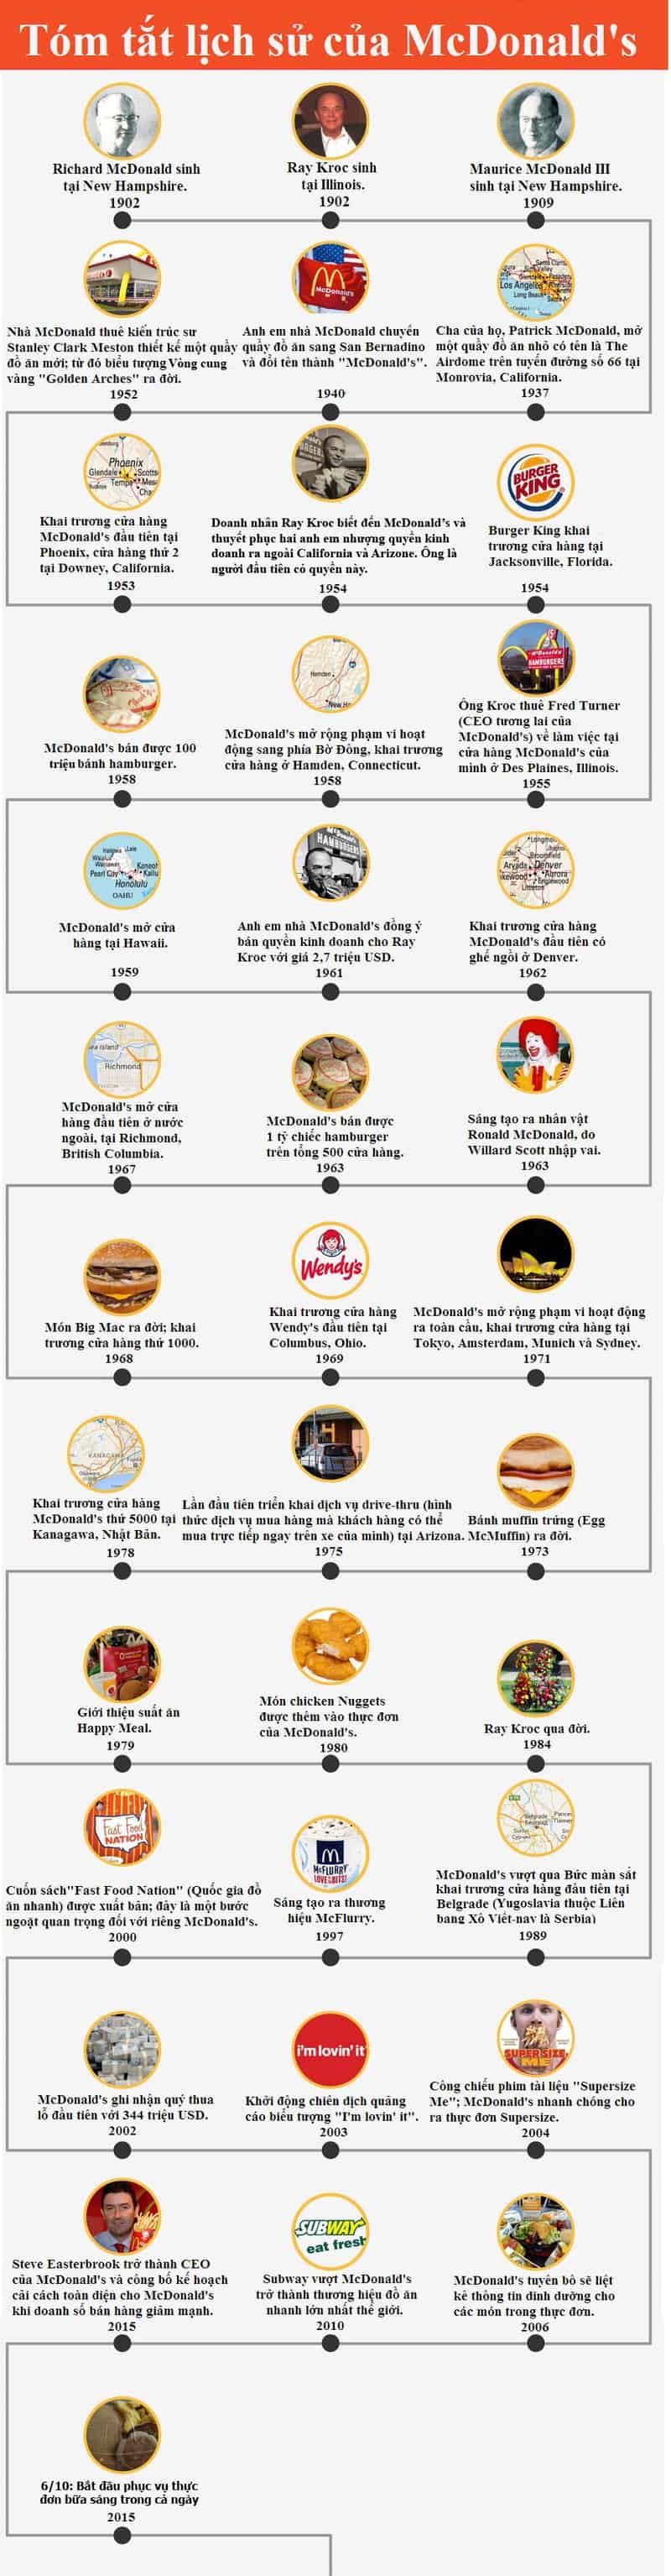 Infographic_McDonalds